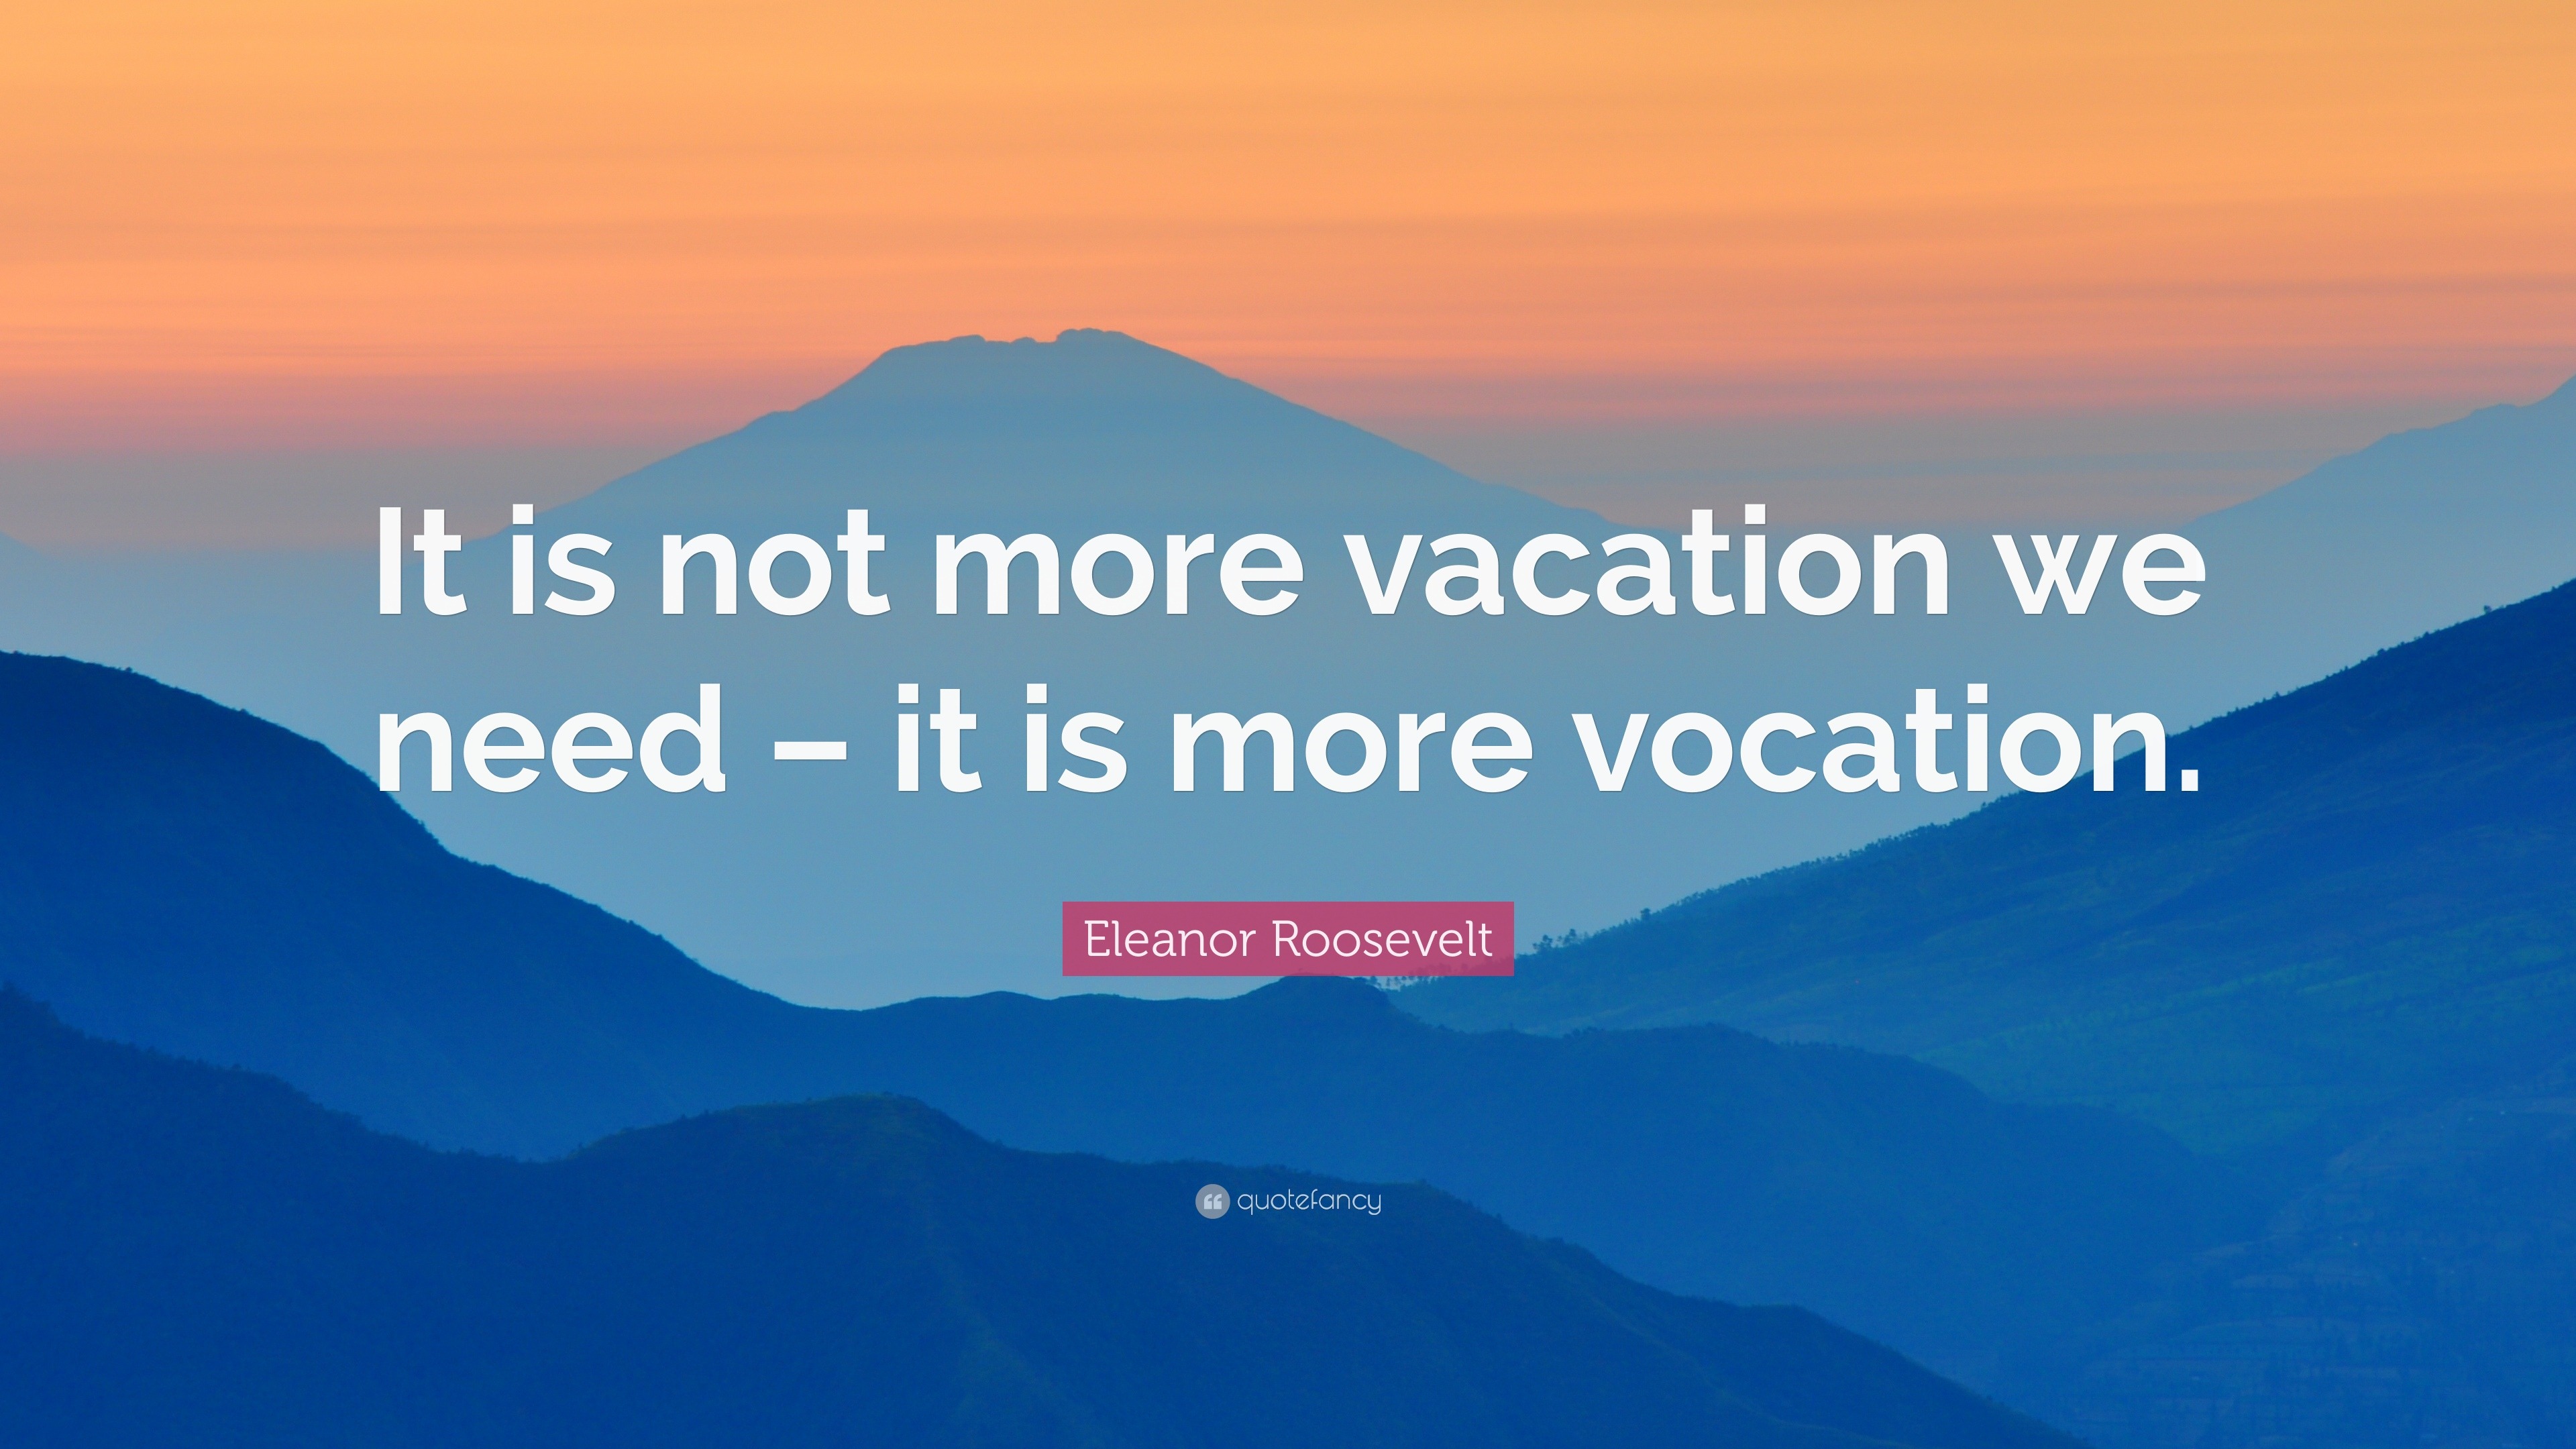 Eleanor Roosevelt Quotes (100 wallpapers) - Quotefancy